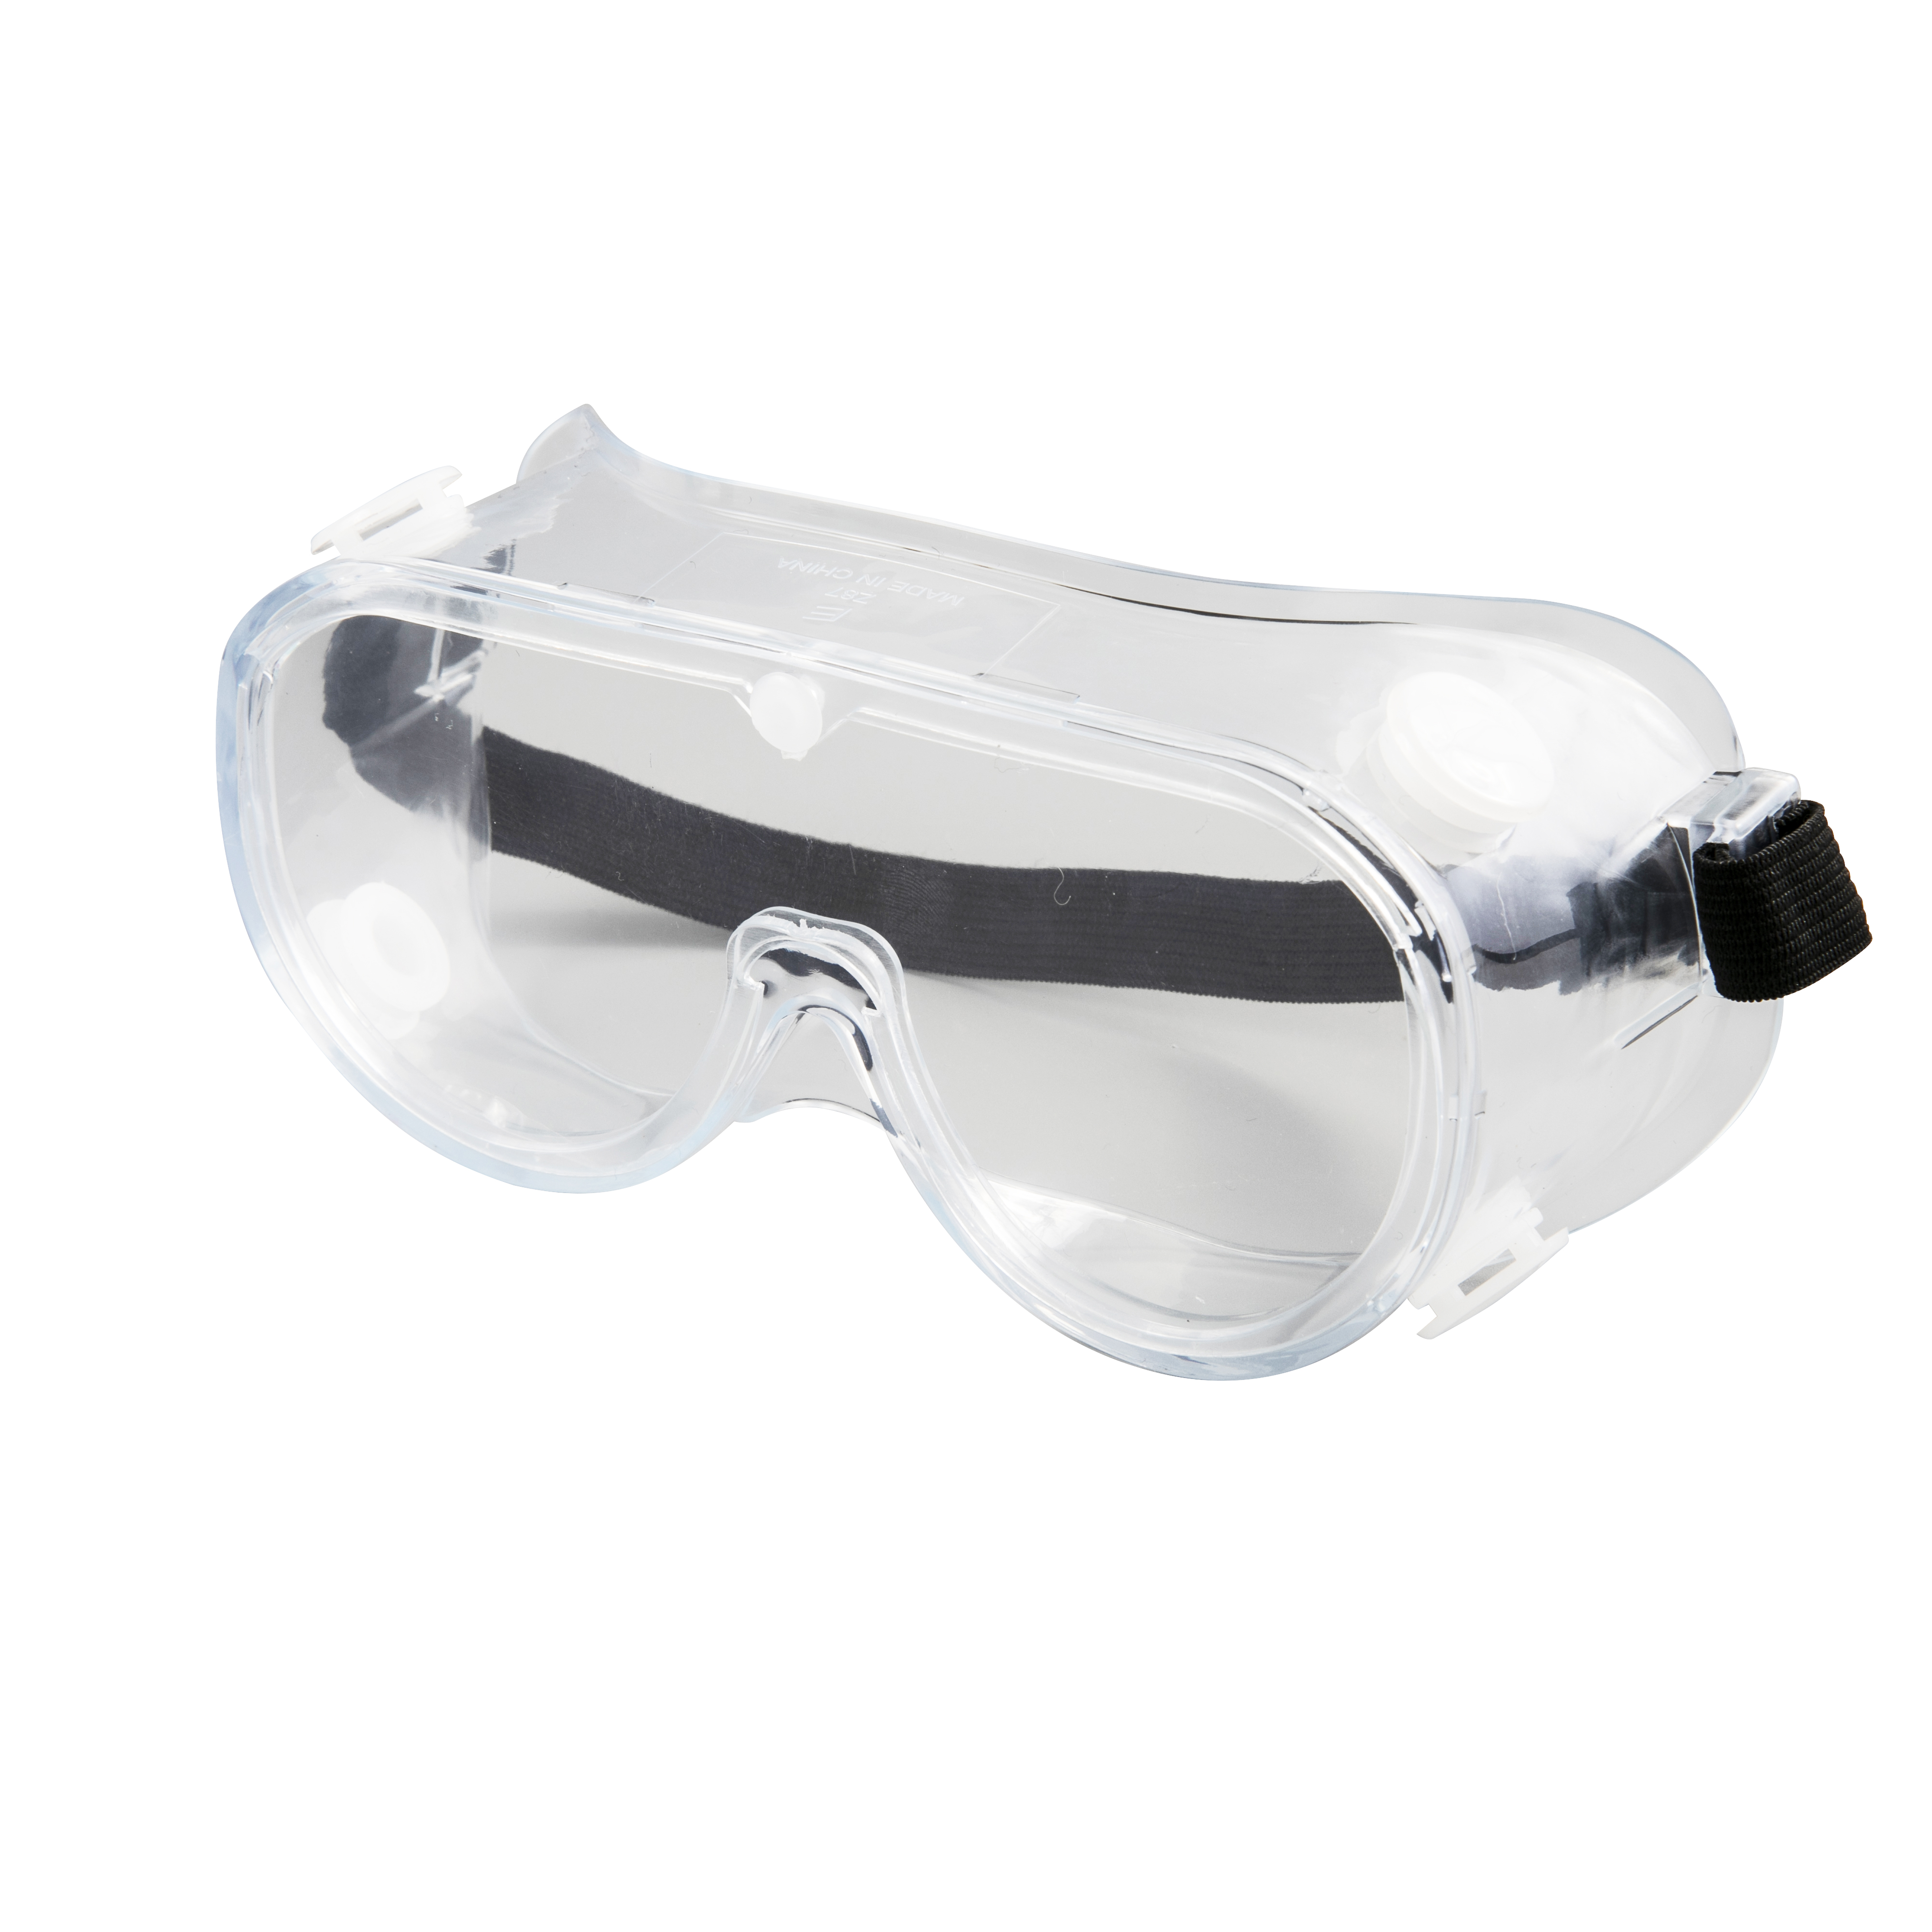 Beskyttelsesbriller til antivirus